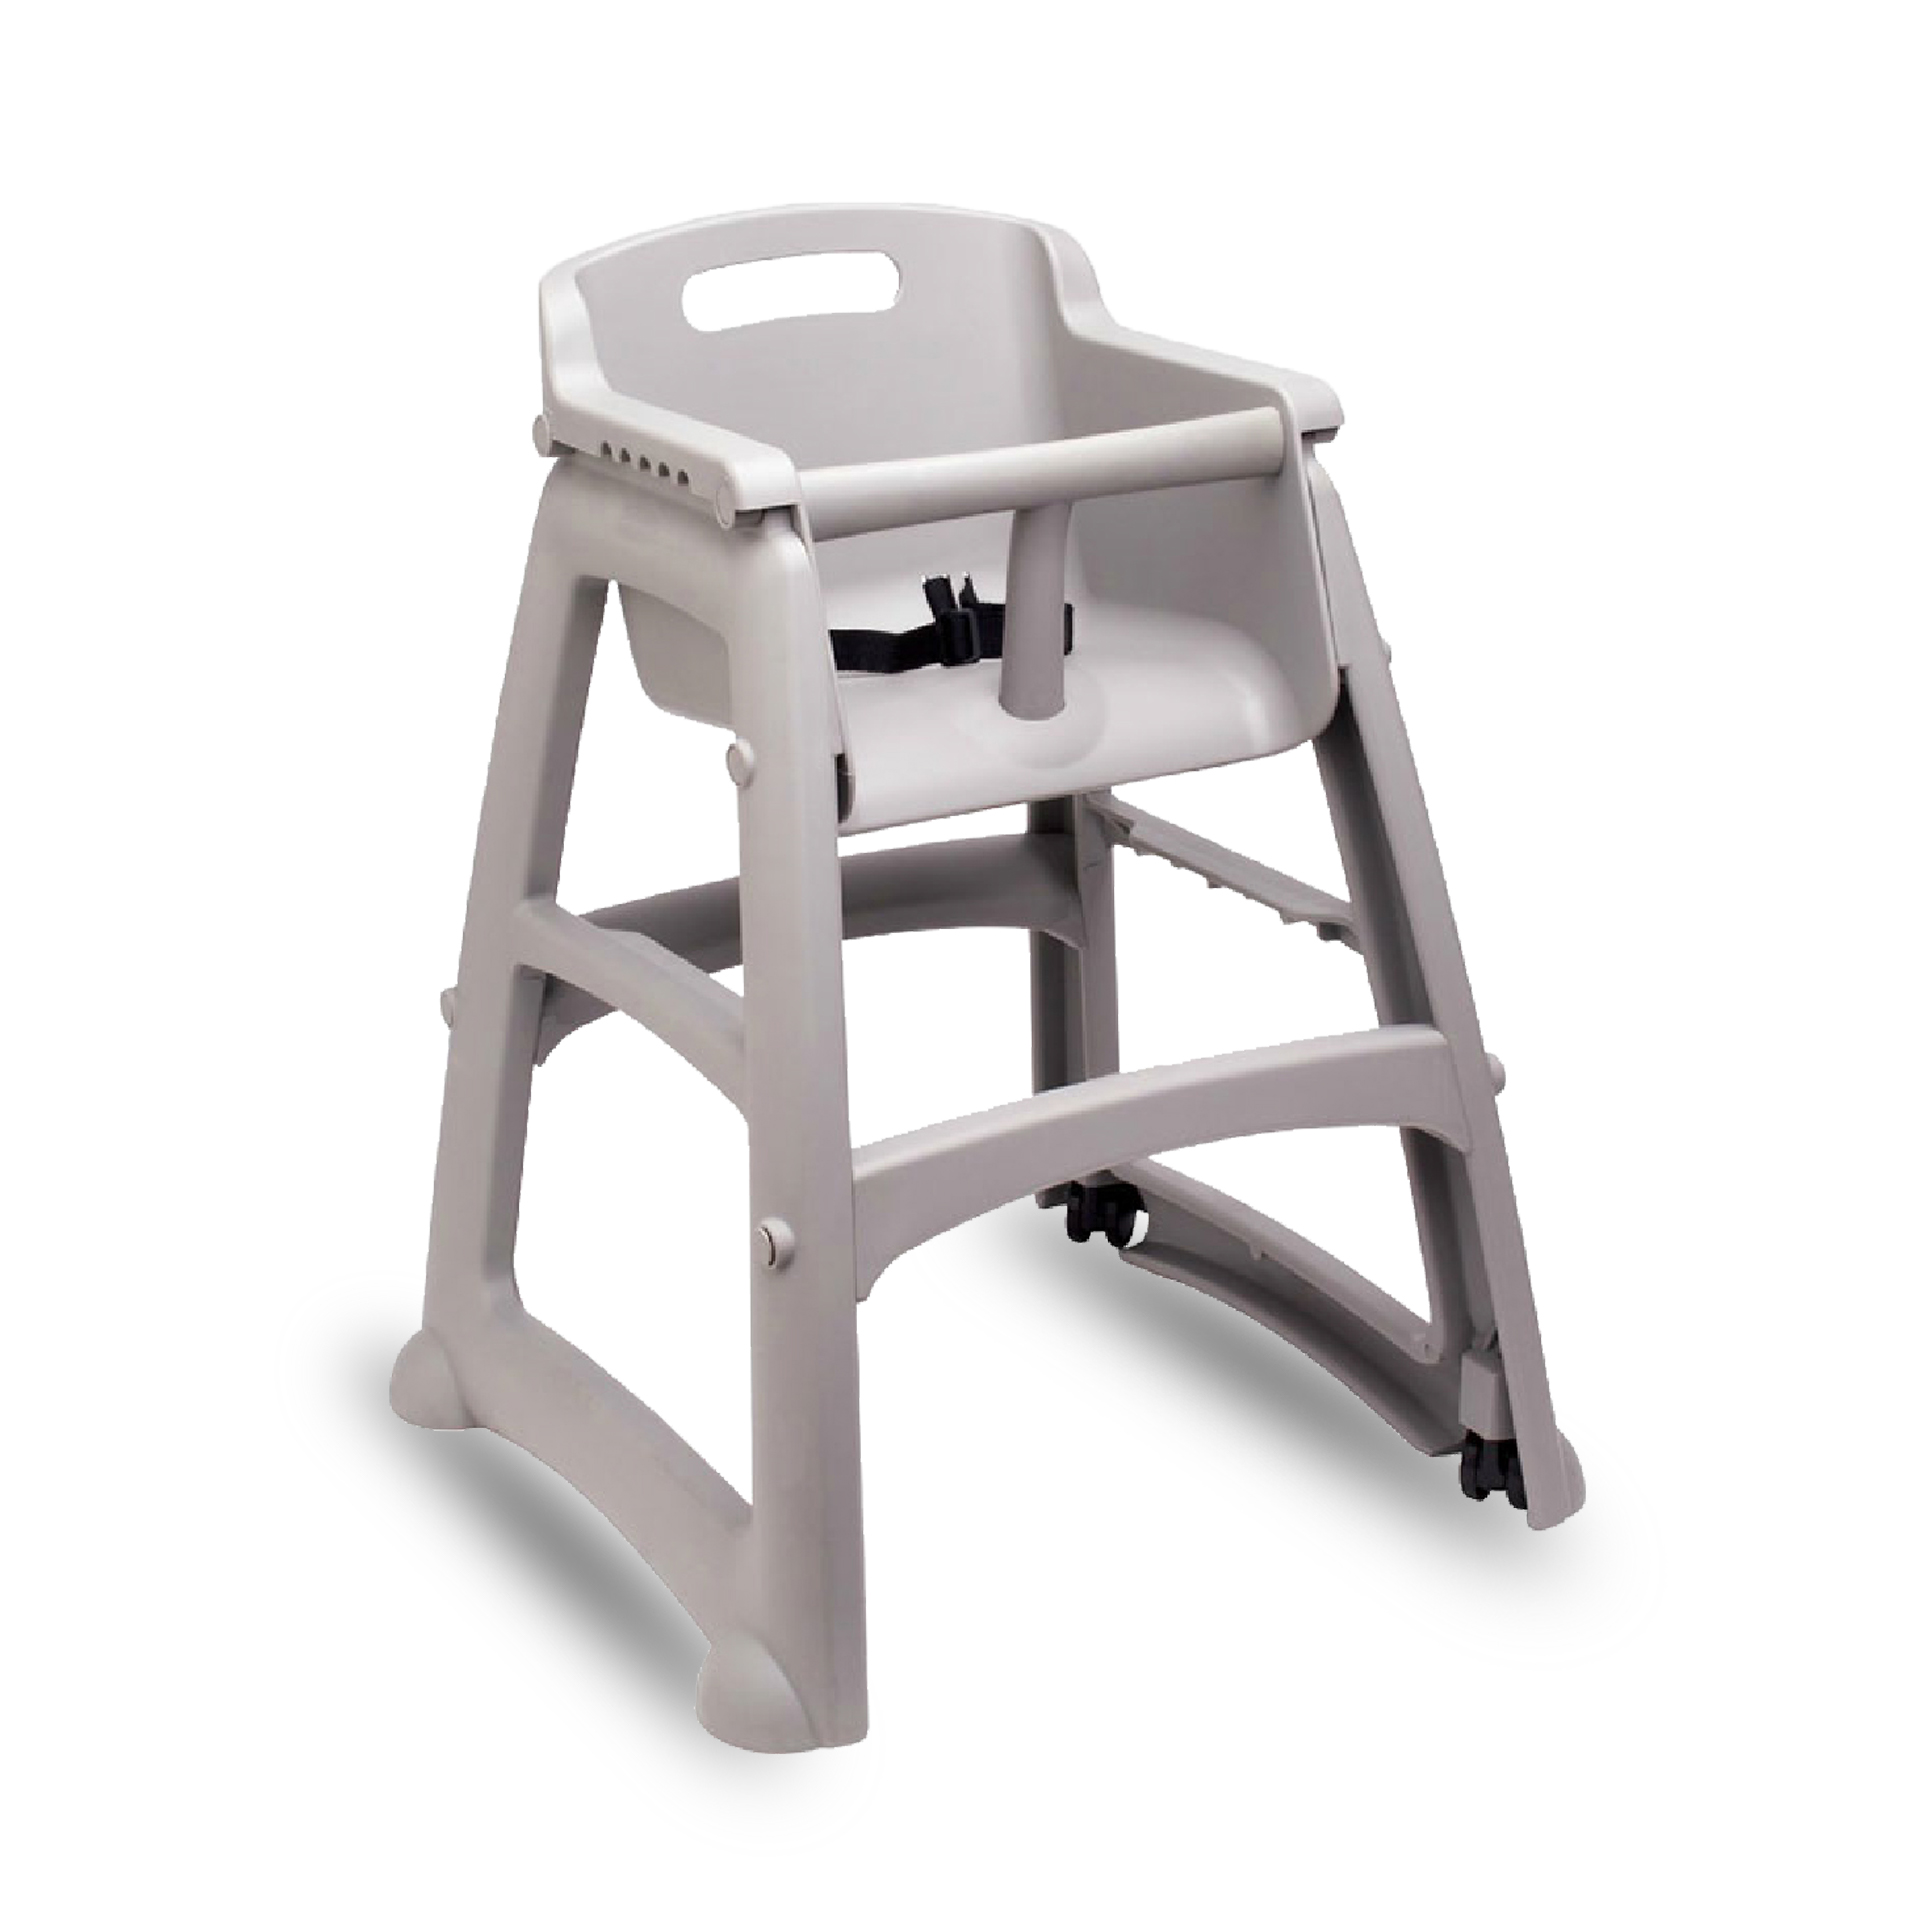 เก้าอี้เด็ก STURDY CHAIR™ (พร้อมประกอบ) สีเทา แพลตทินัม